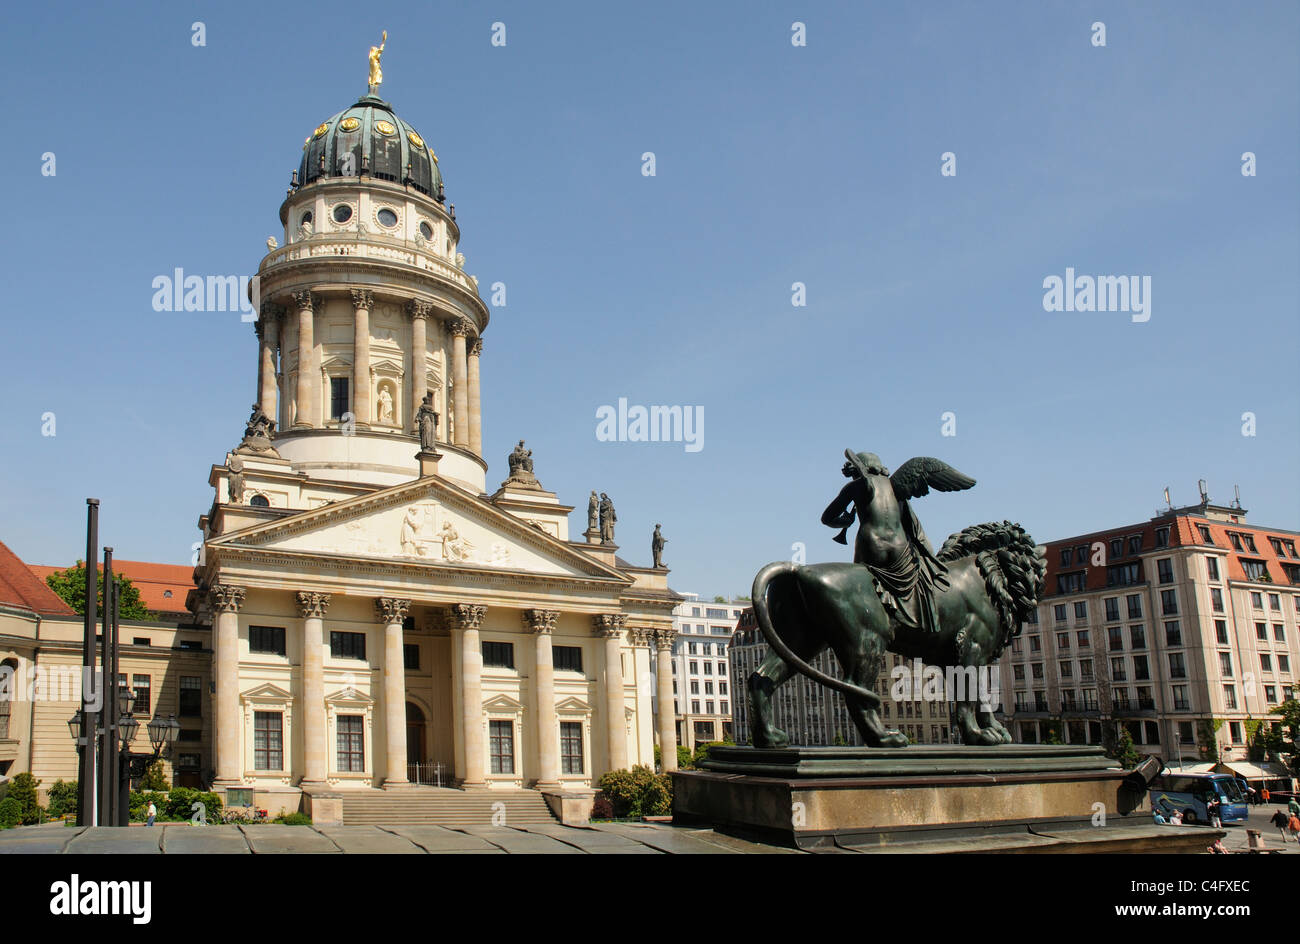 The French Cathedral (Franzosischer Dom) on Gendarmenmarkt in Berlin Stock Photo